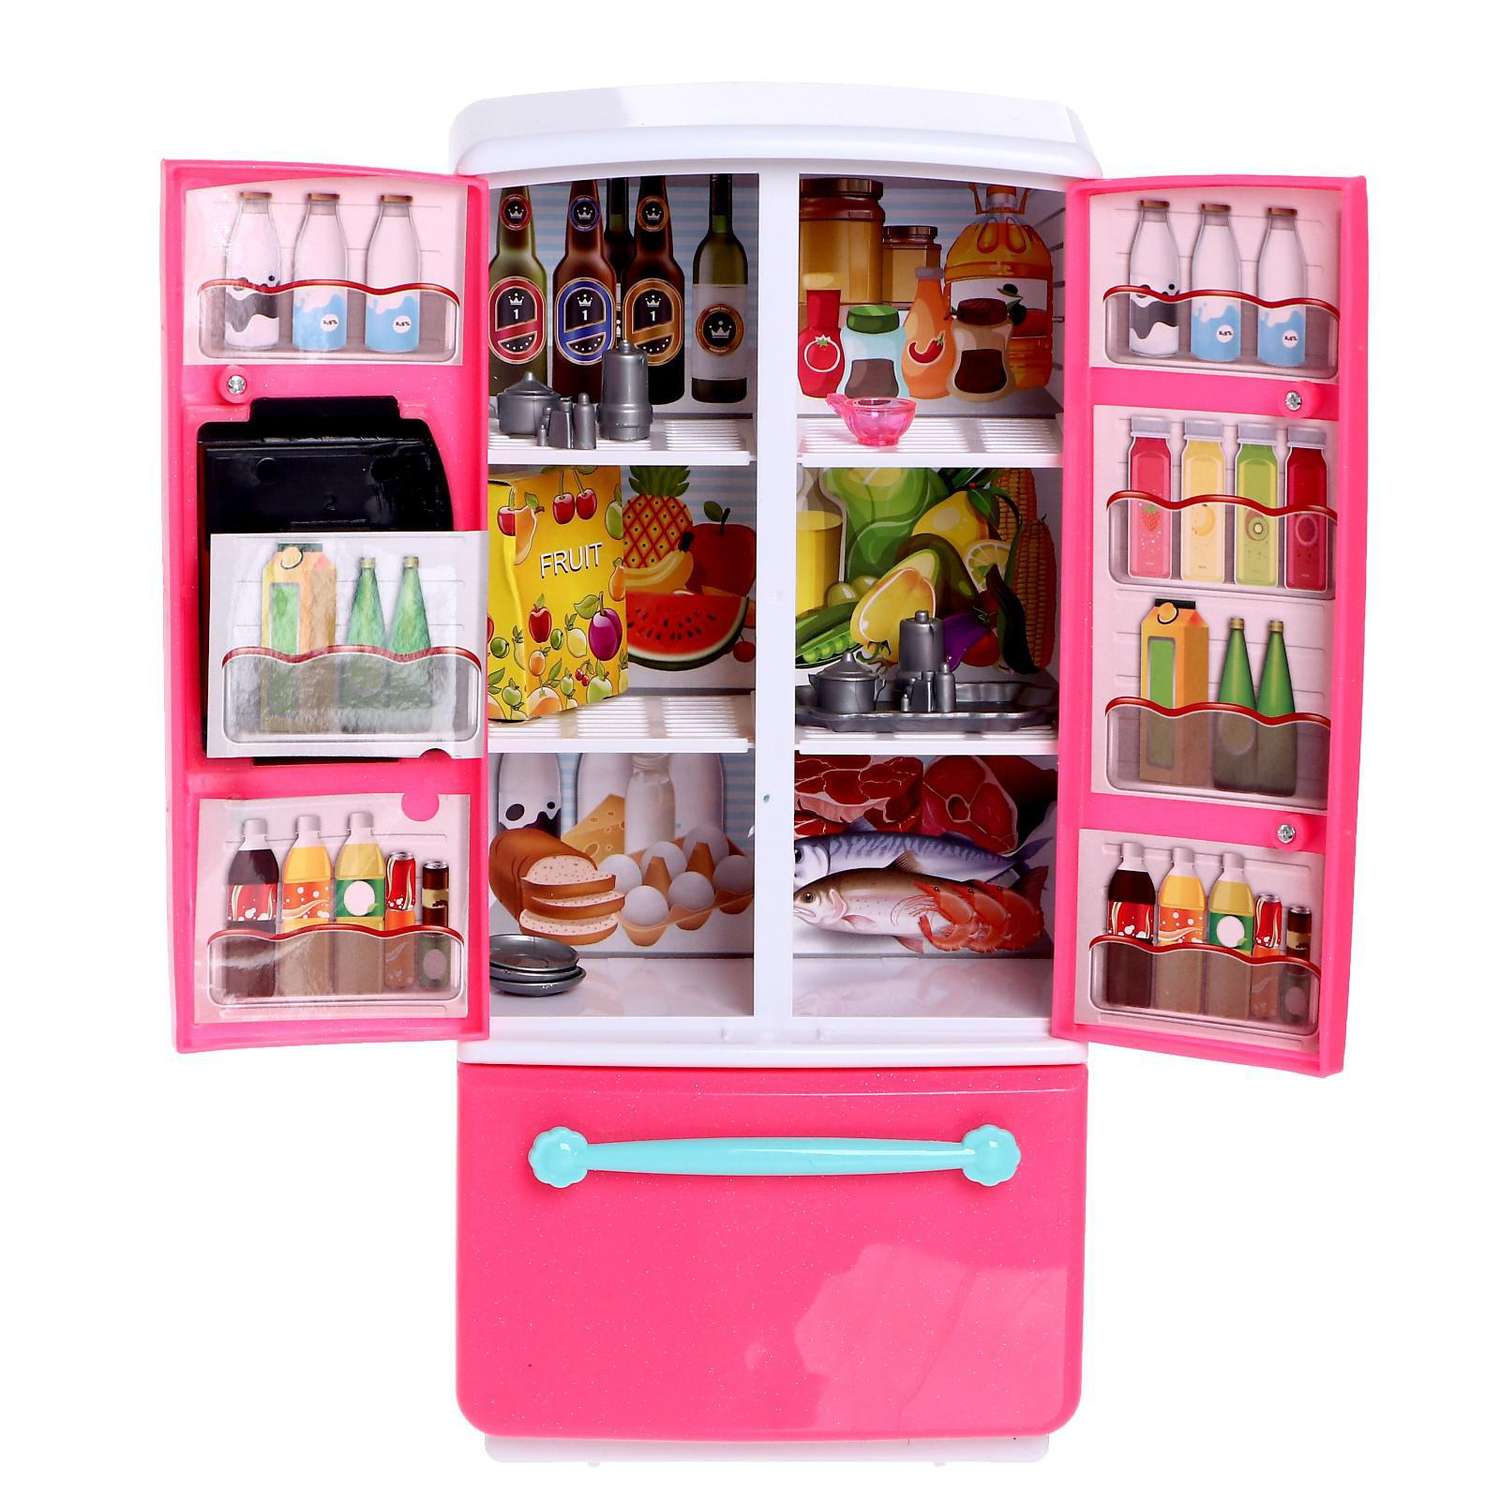 Набор мебели Школа Талантов «Холодильник» для кукол 5206368 - фото 2